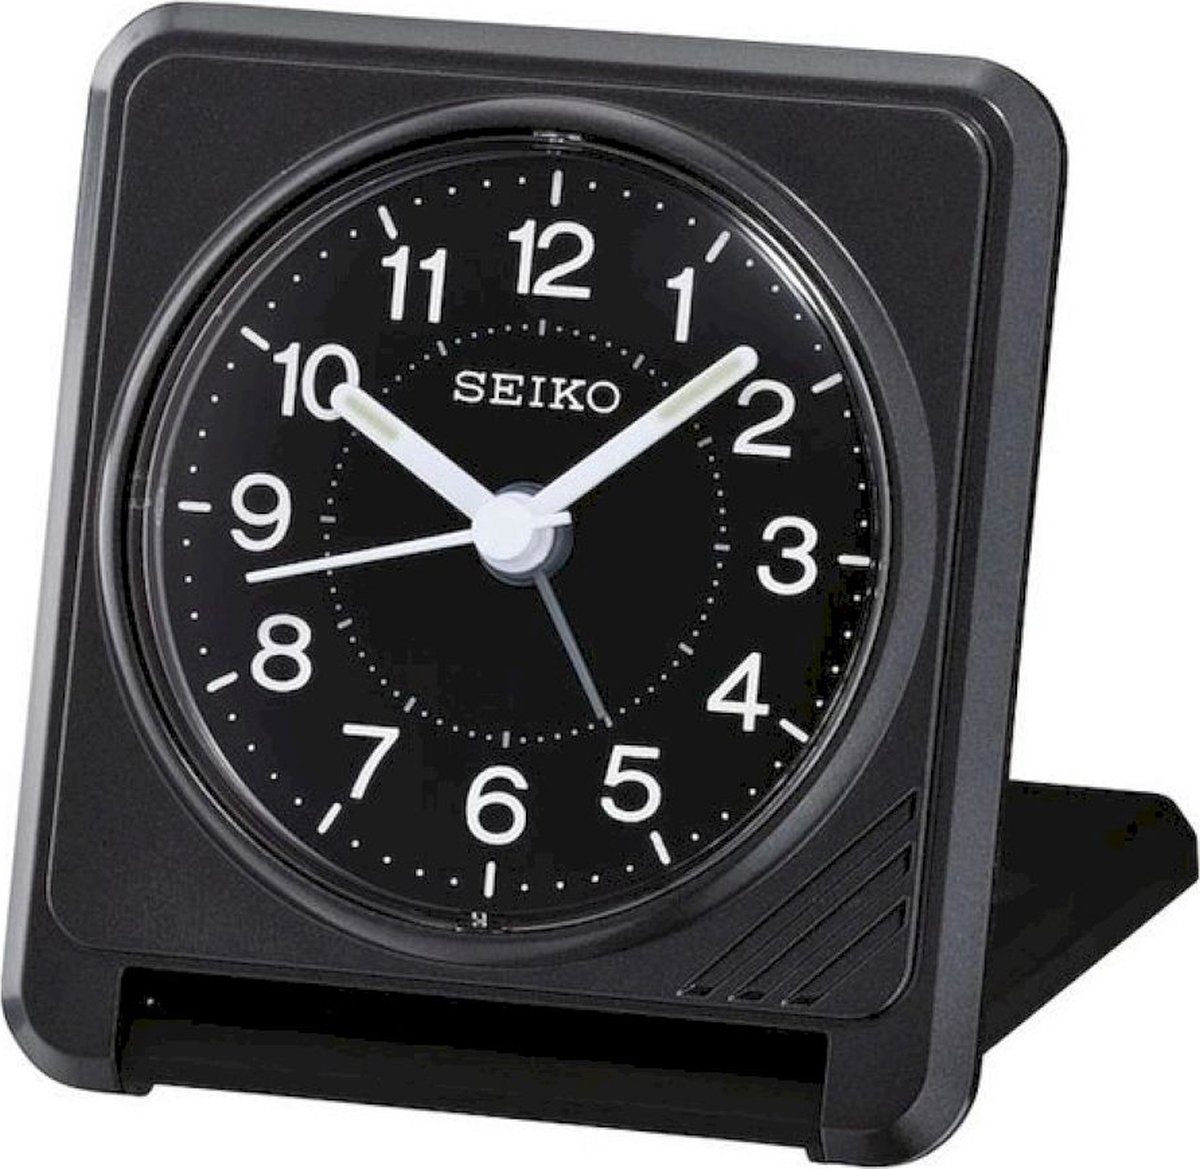 Seiko reiswekker QHT015K elektronisch piep alarm - zwarte uitvoering